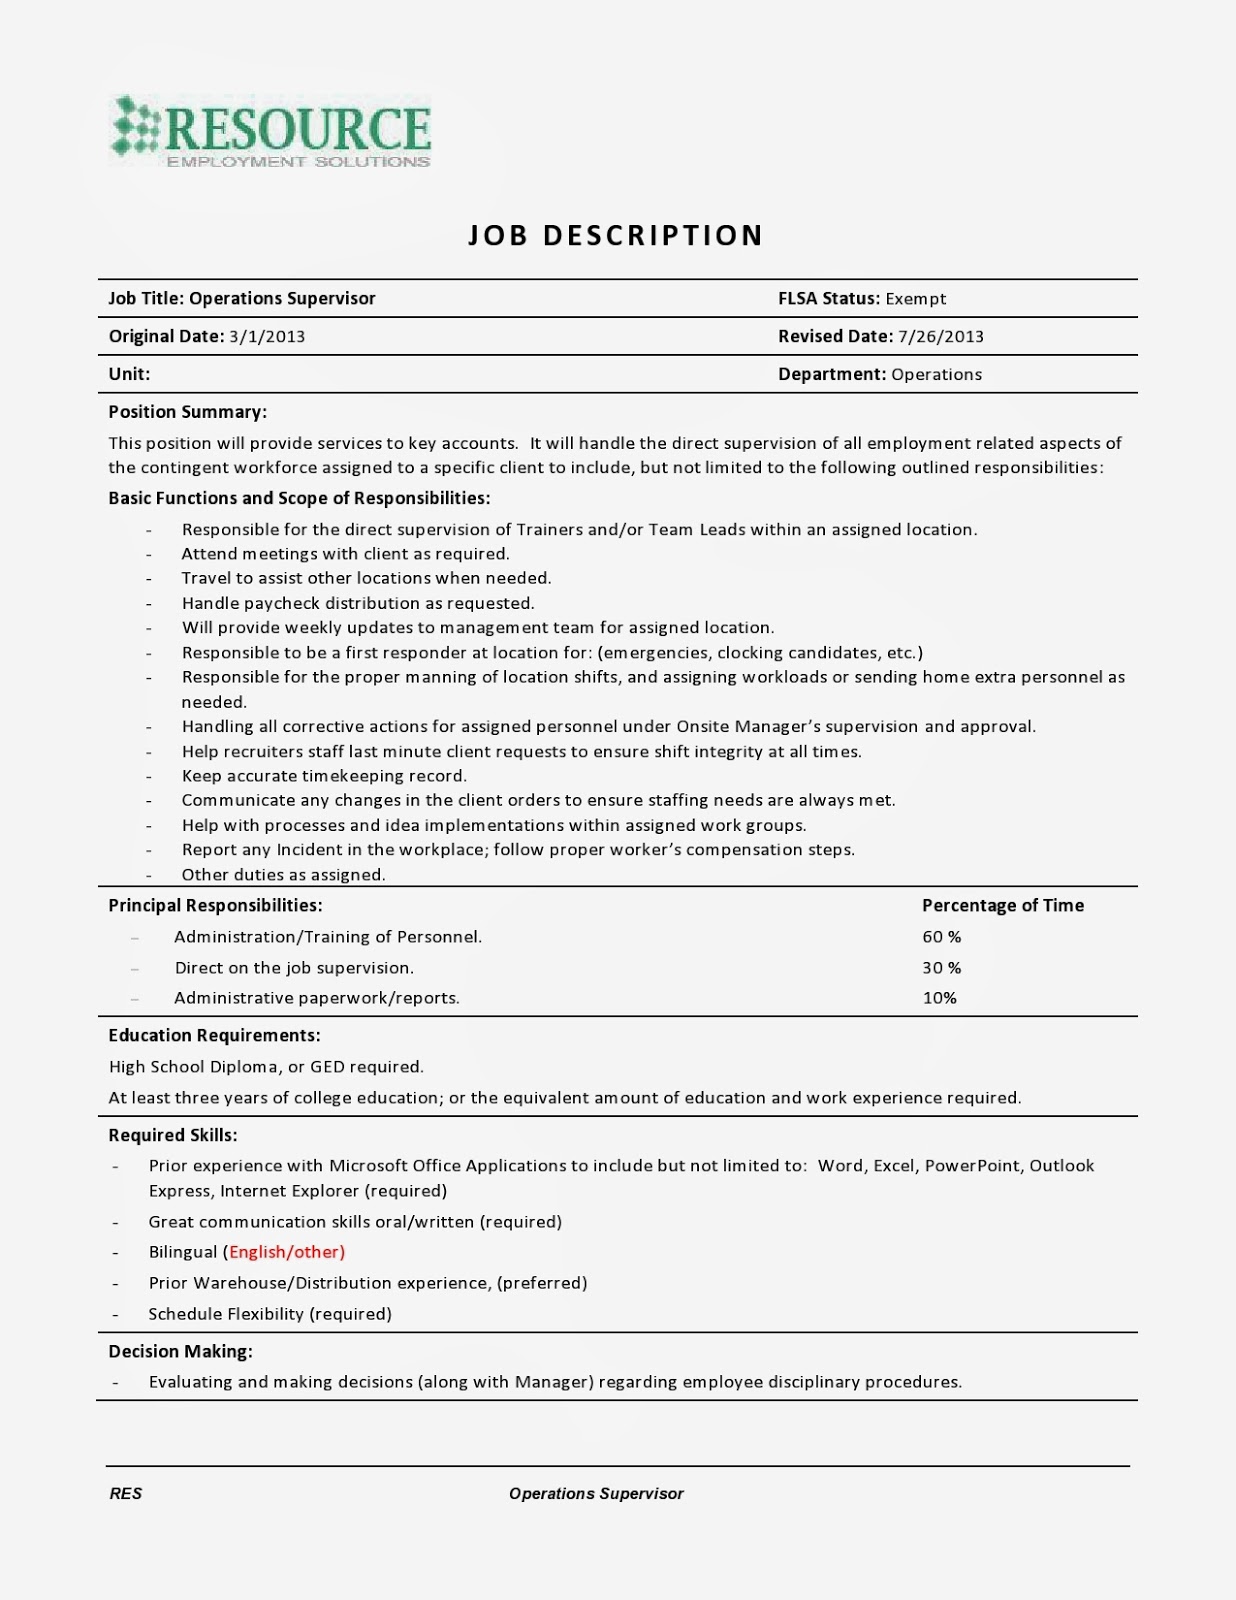 Sample of resume for restaurant supervisor